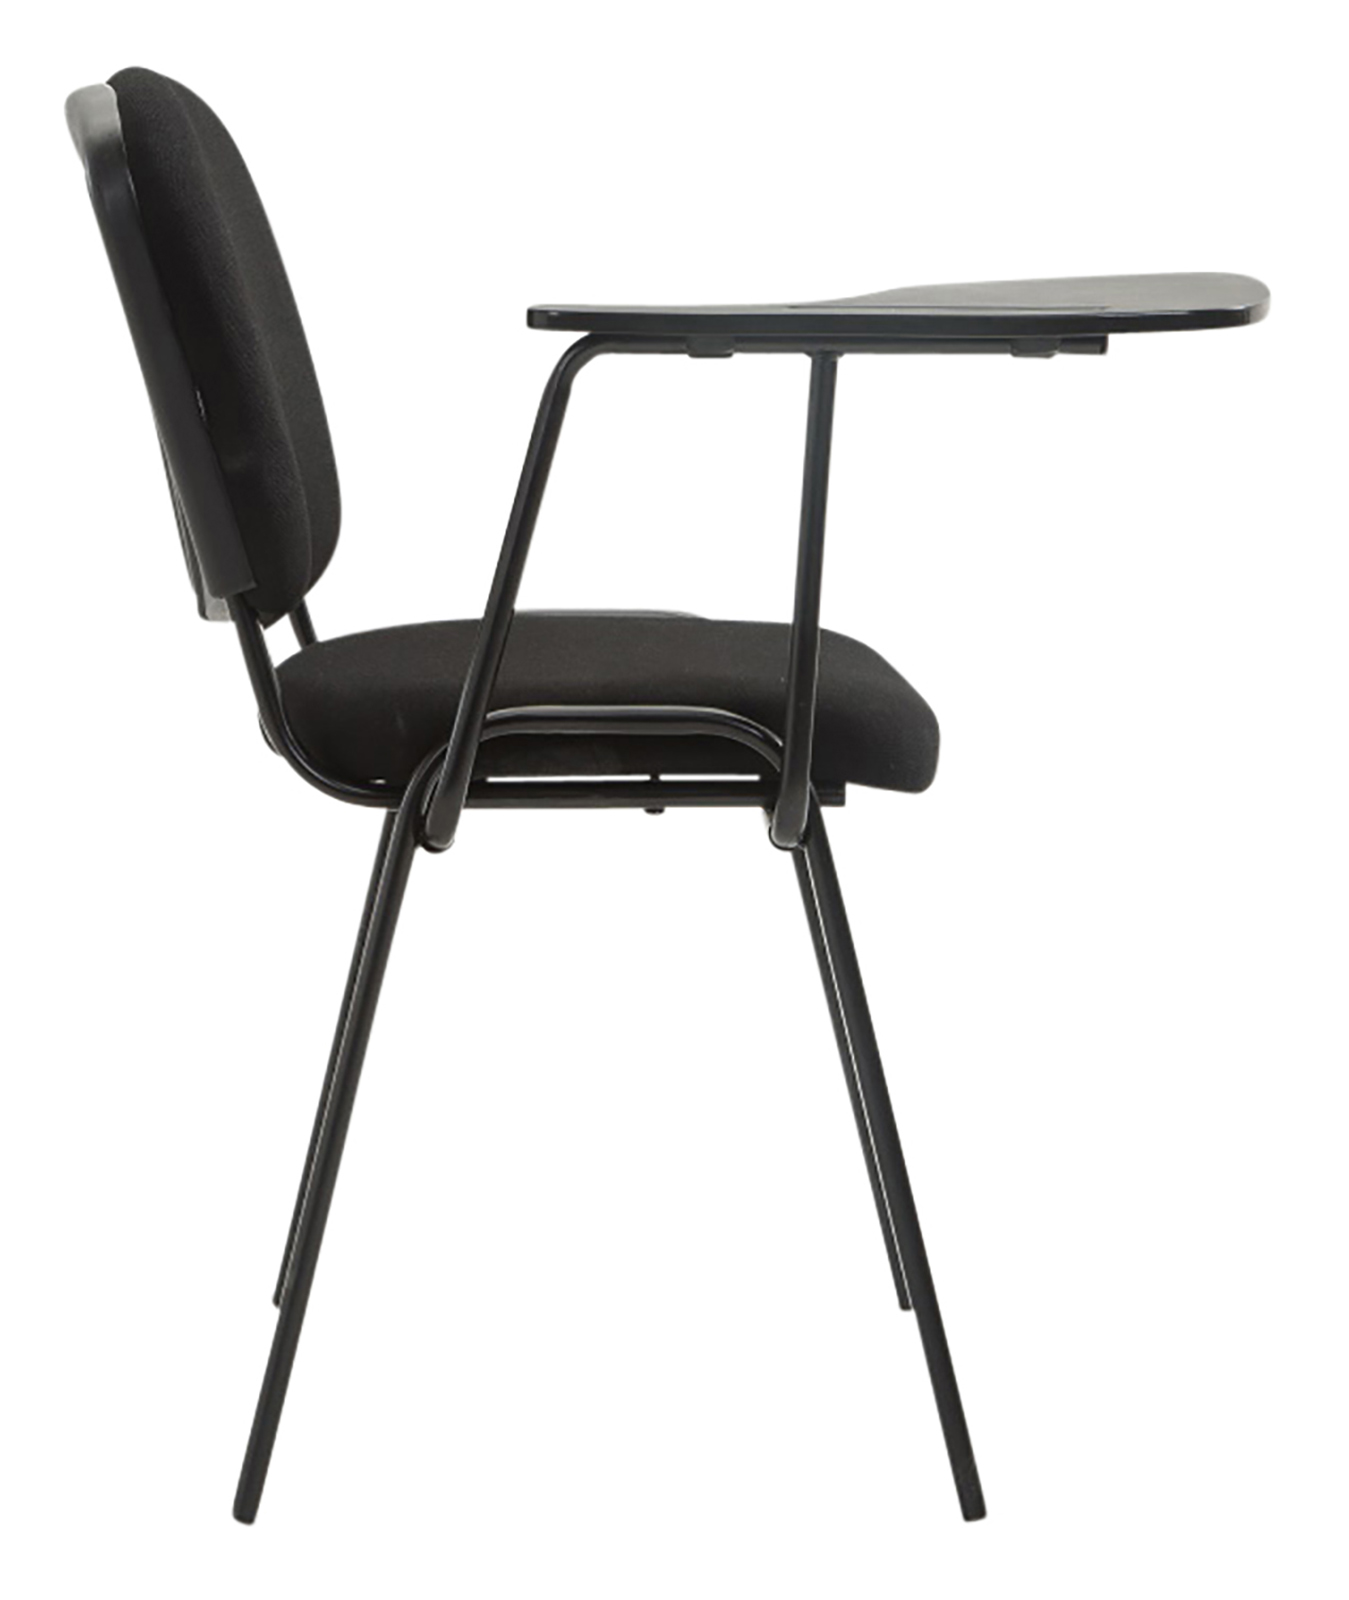 4er Set Stühle Ken mit Klapptisch Stoff schwarz